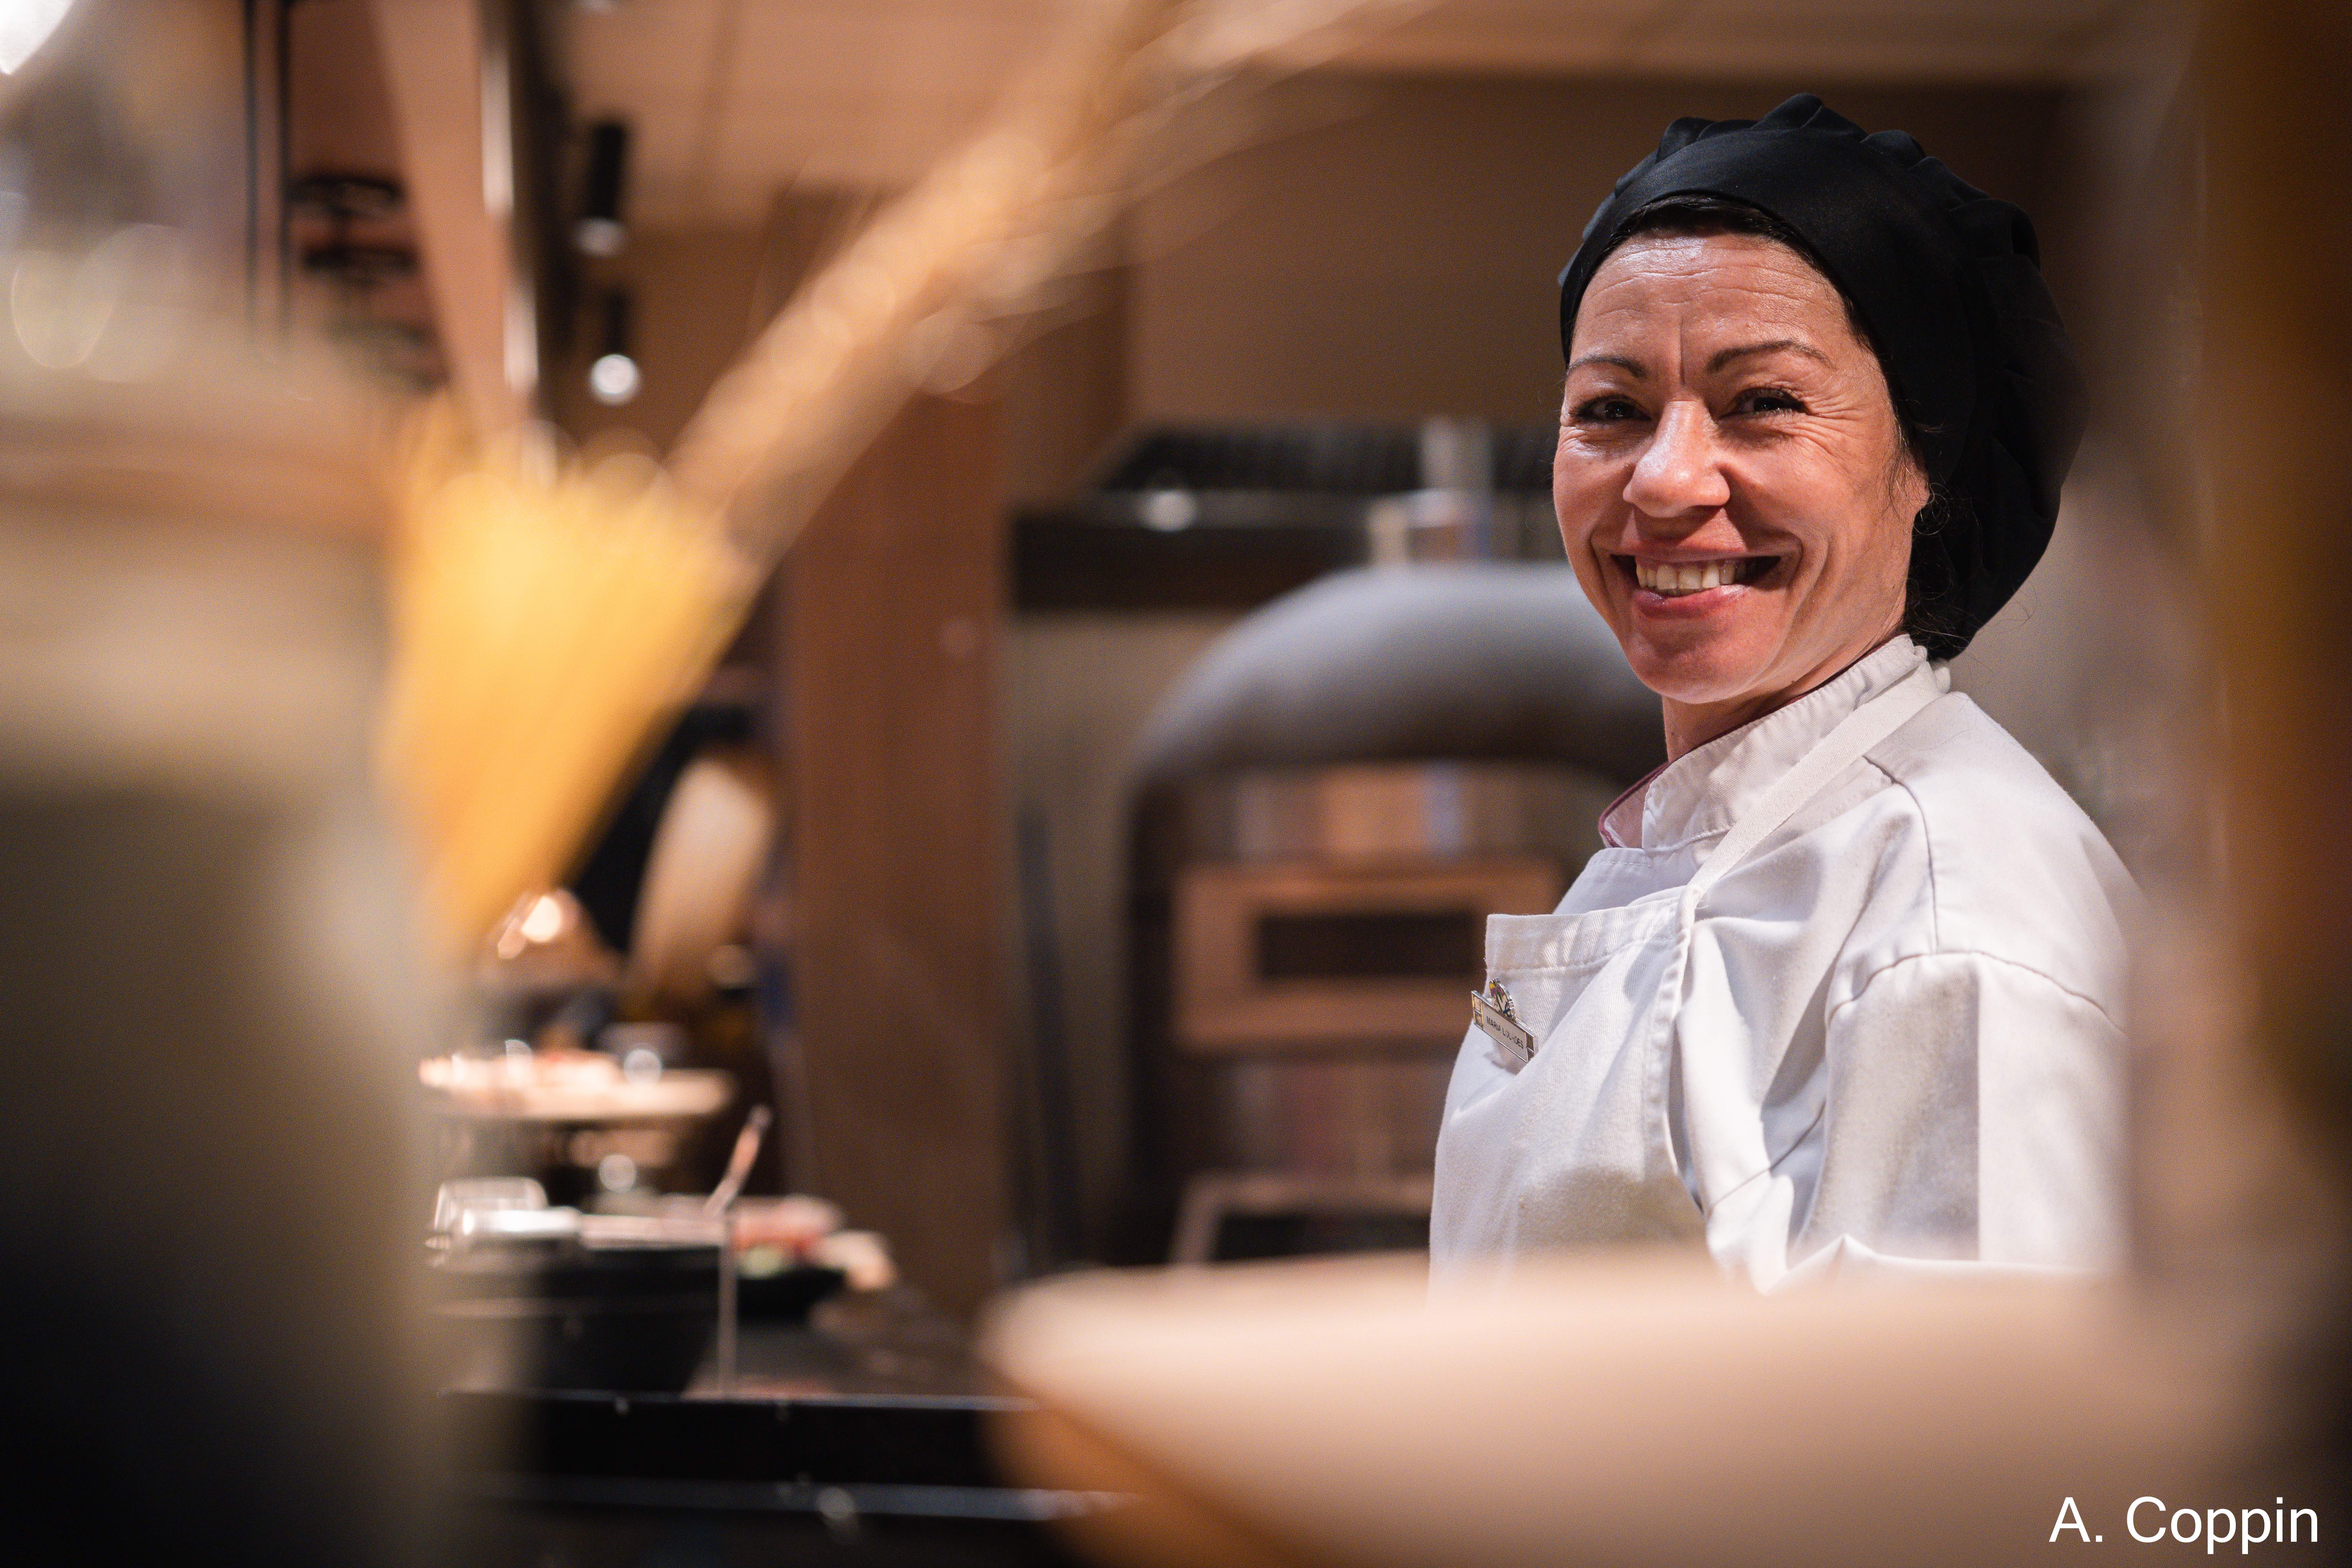 Une Cuisinière qui sourit face à la caméra dans un restaurant Club Med